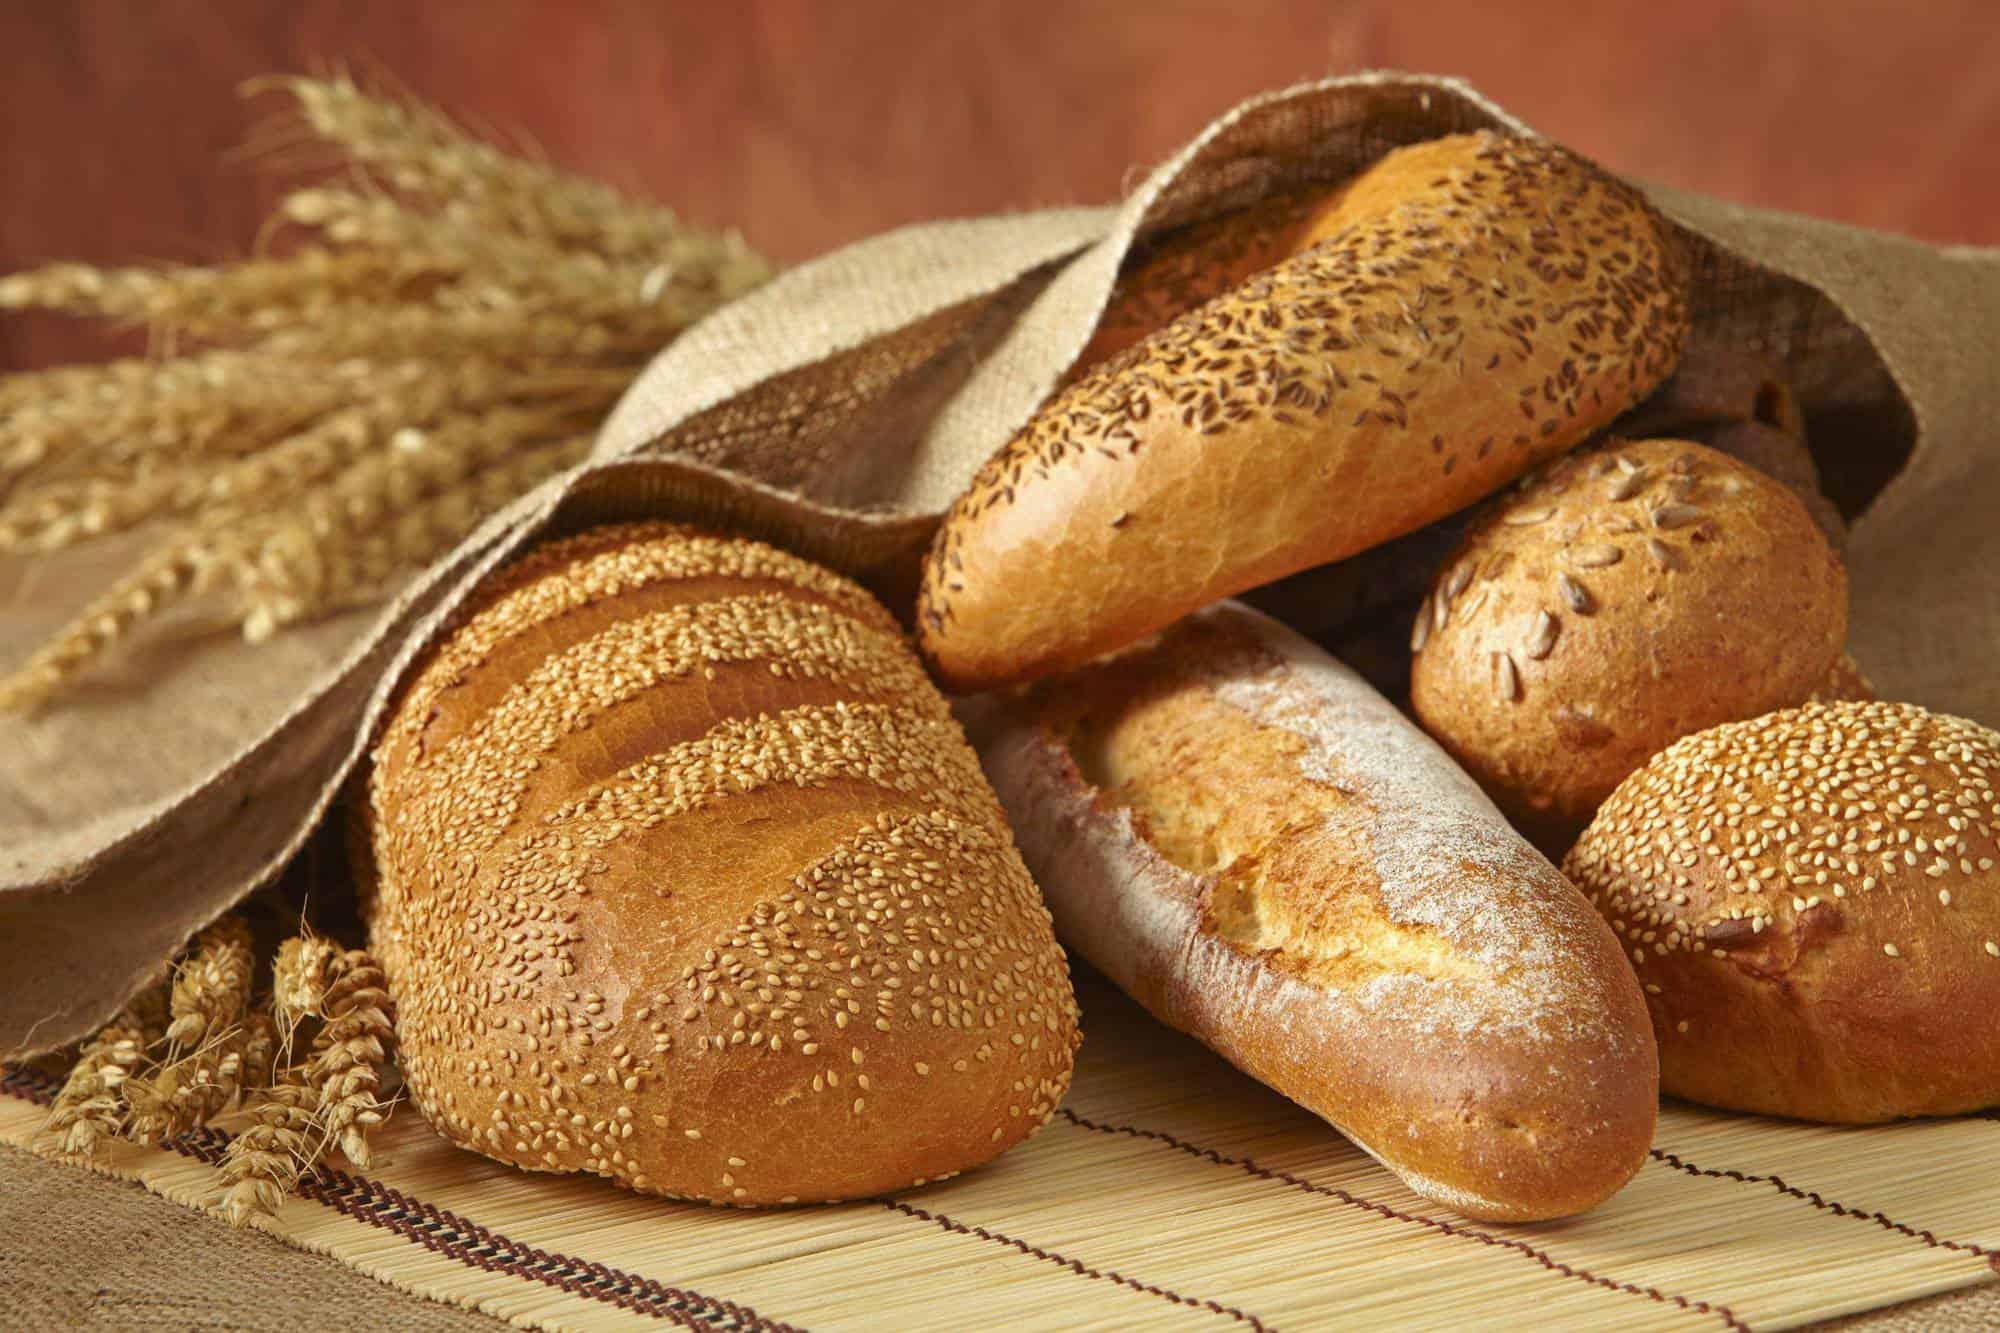 تفسير حلم العجين والخبز